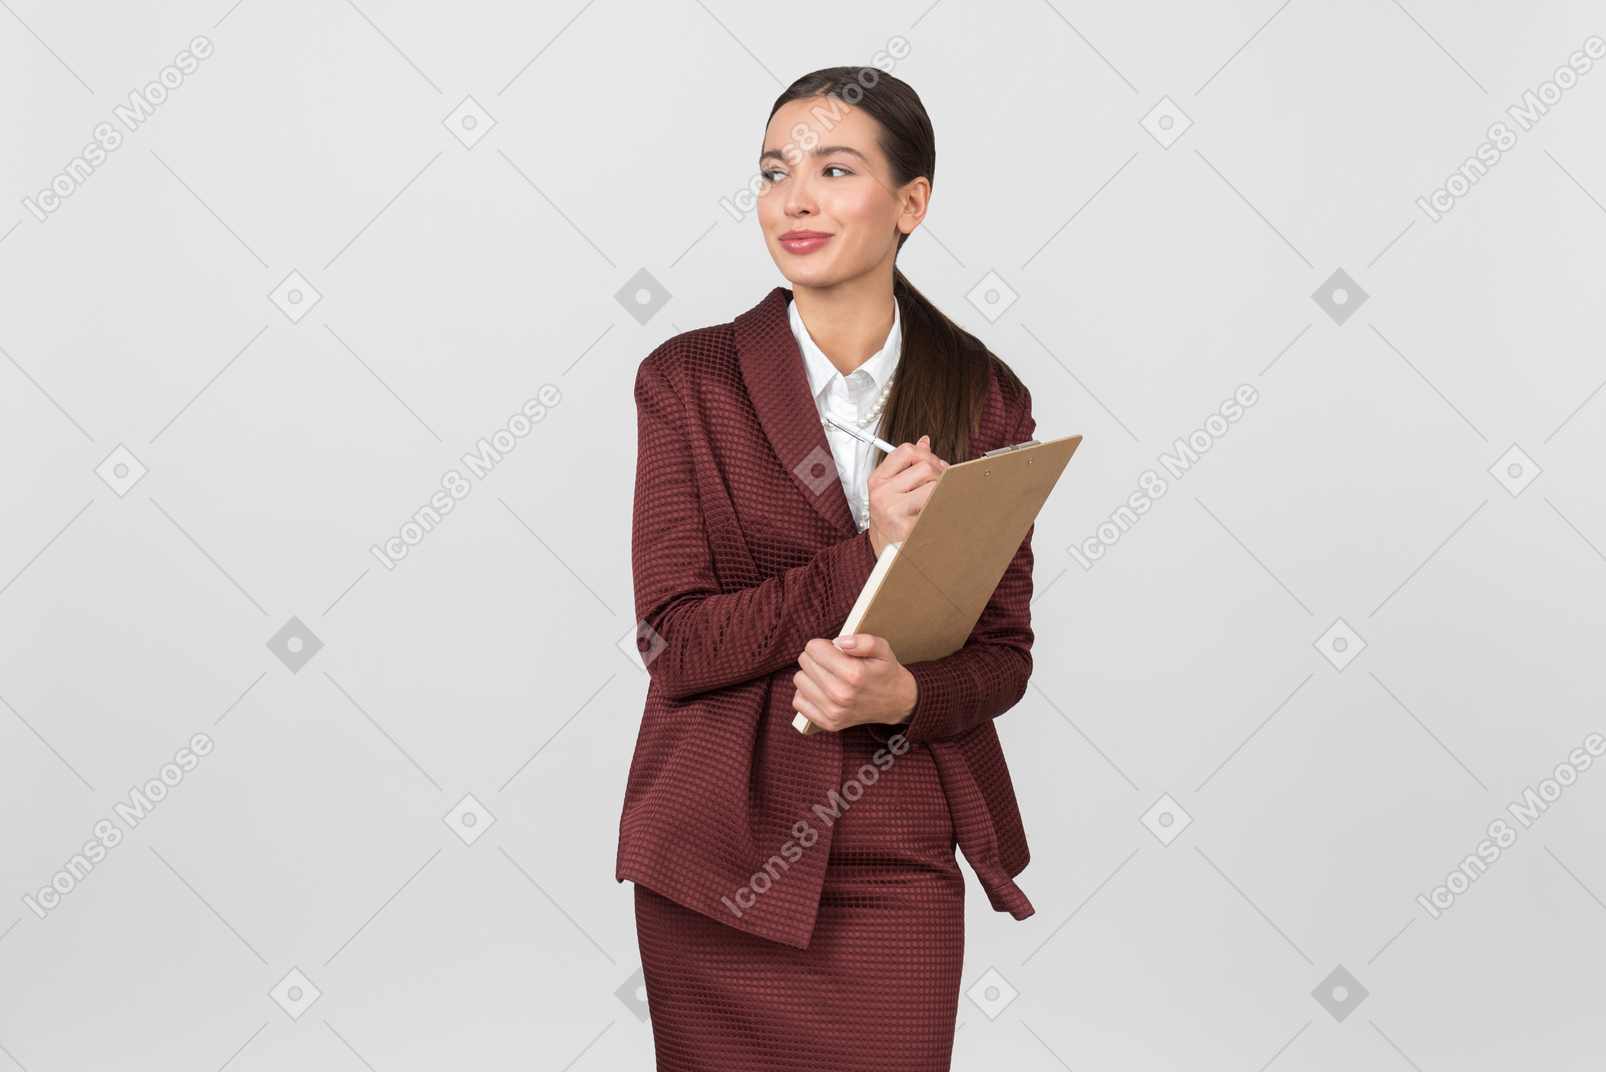 Atractiva mujer vestida formalmente tomando notas en un portapapeles.